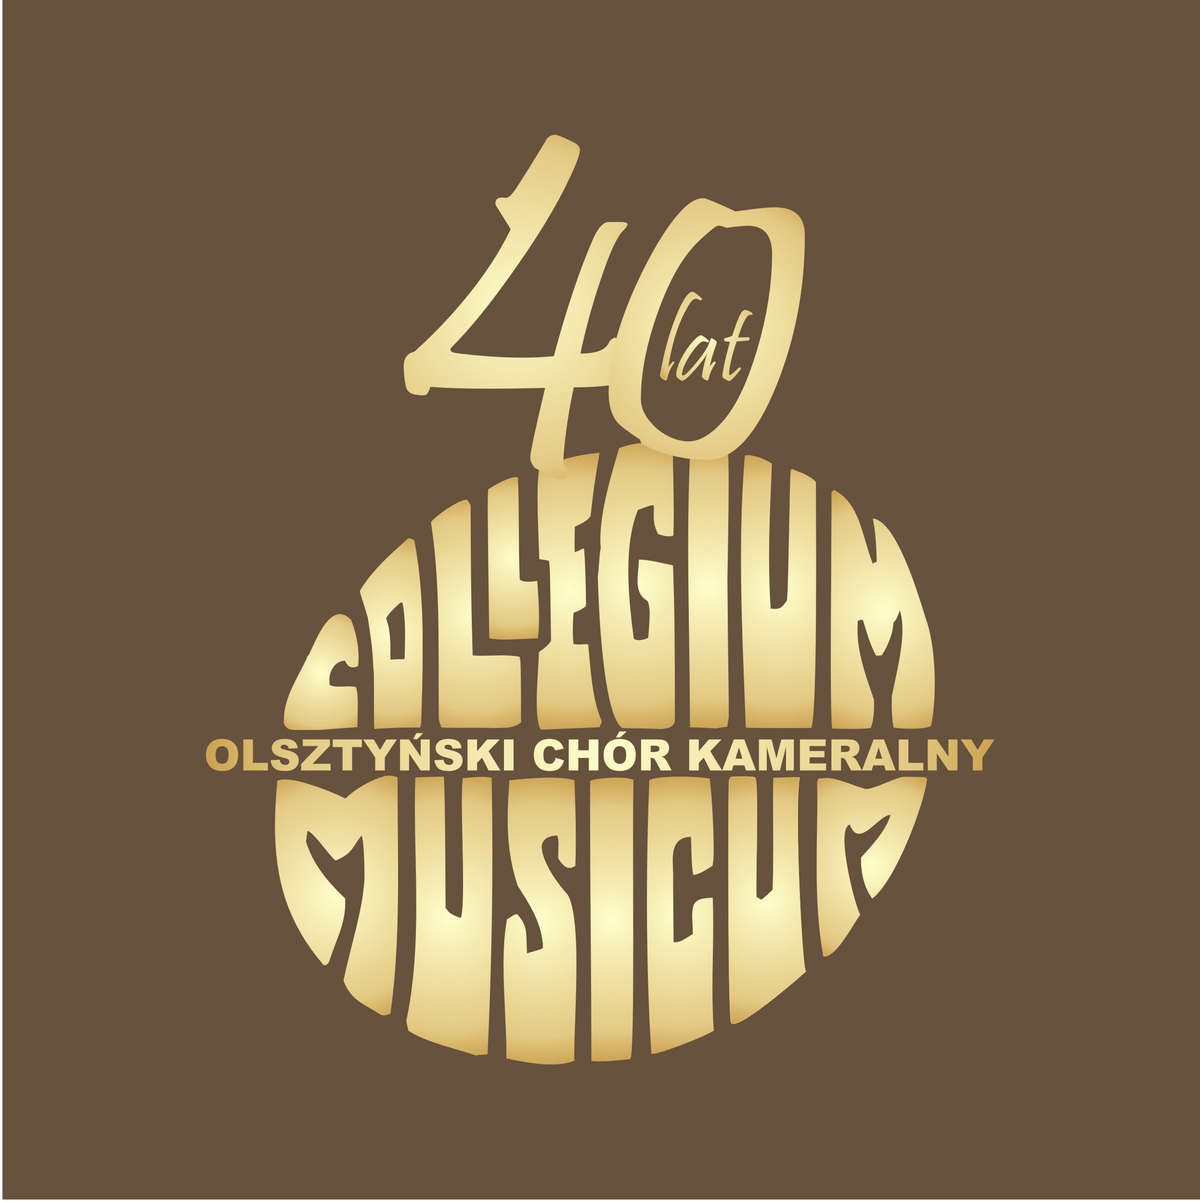 40 lat chóru Collegium Musicum w pamiątkach - full image